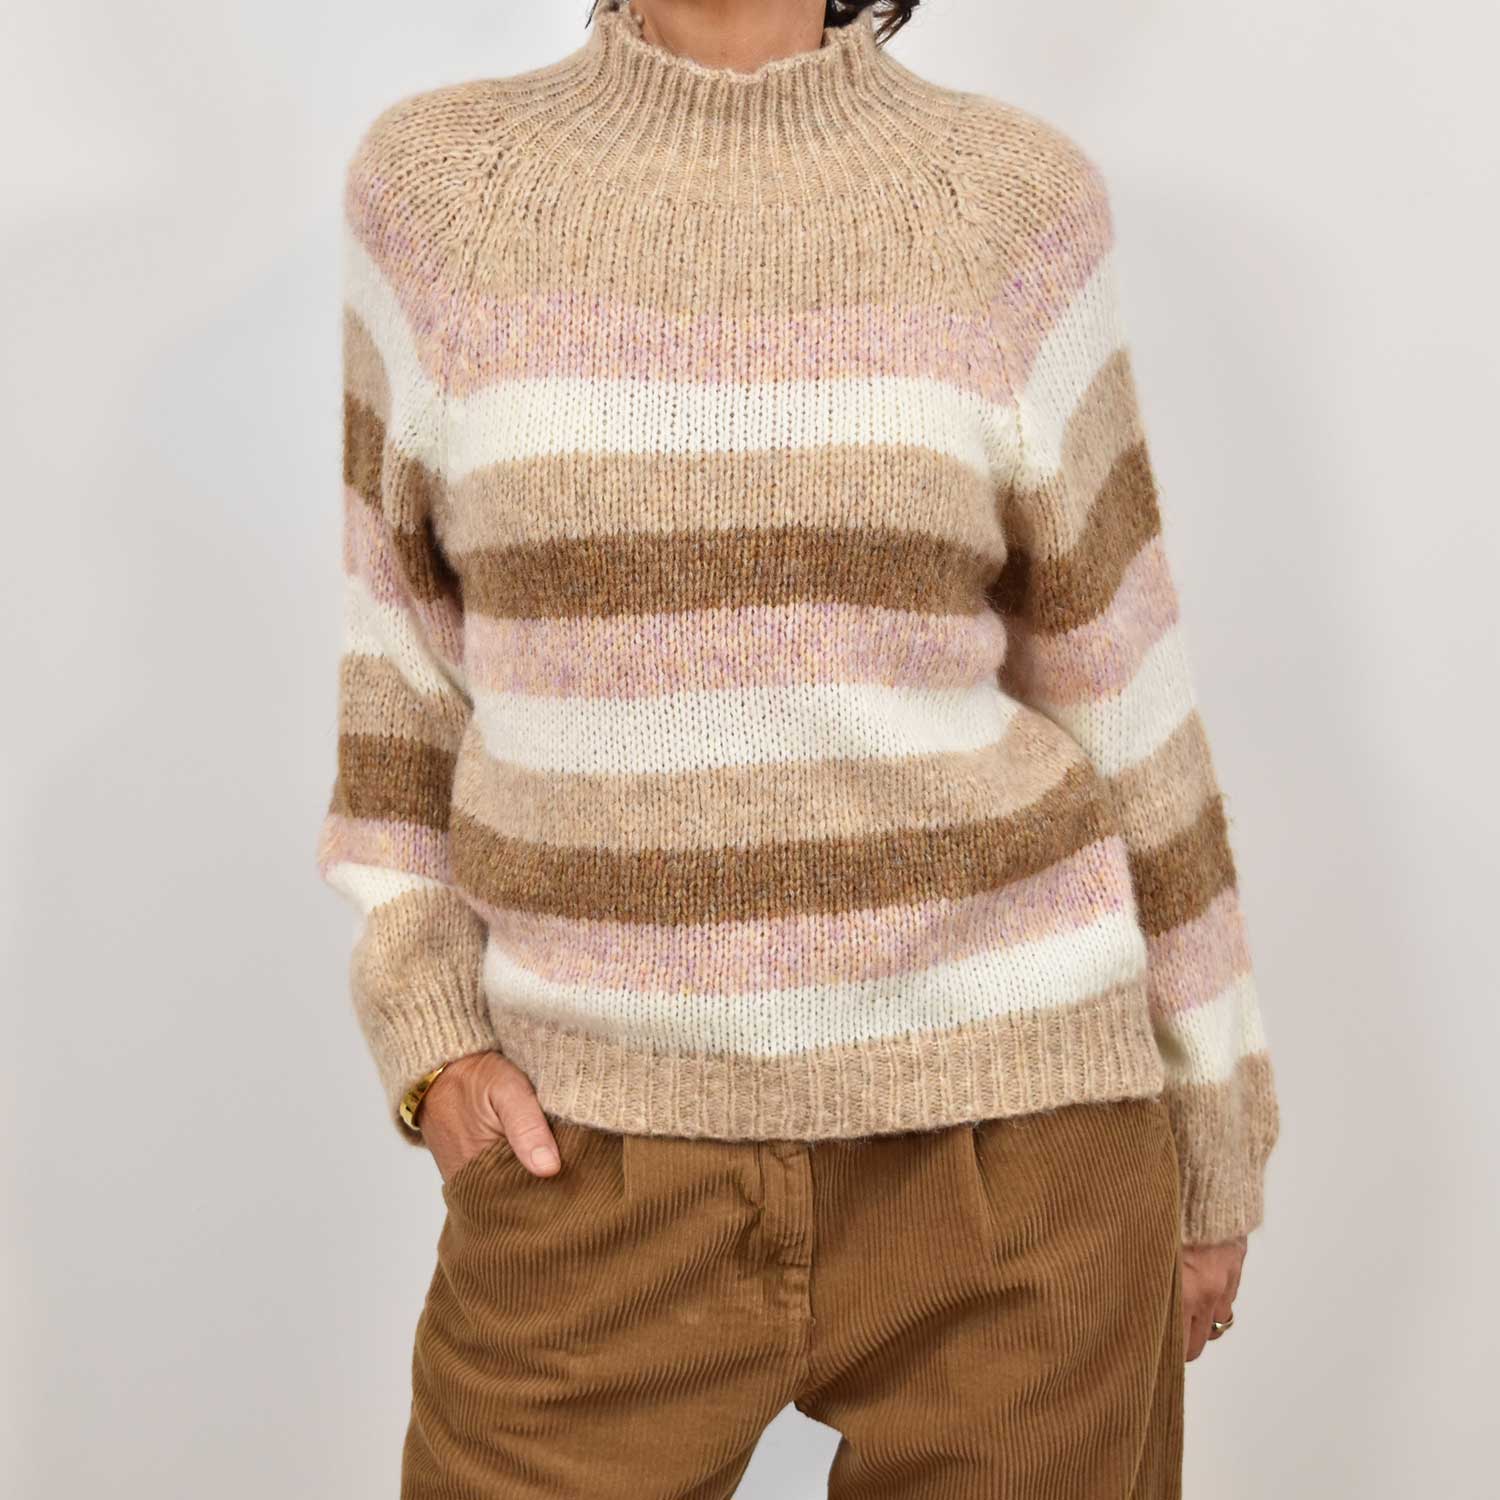 Beige stripes halter sweater